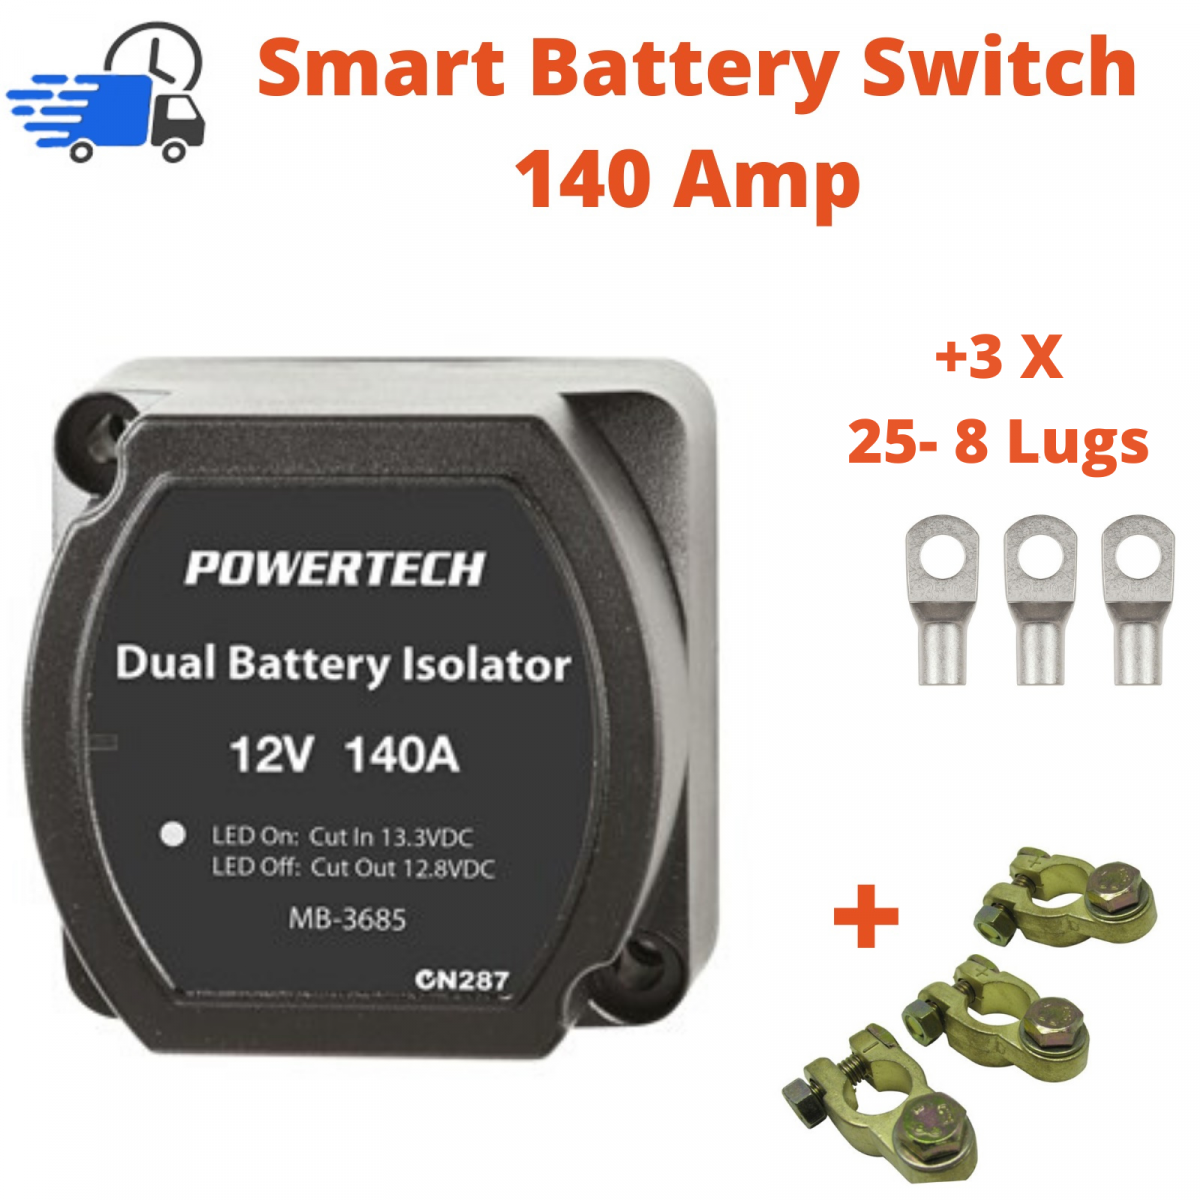 Voltage sensitive relay, smart 12V battery isolator, Dual Battery
Isolator Kit 